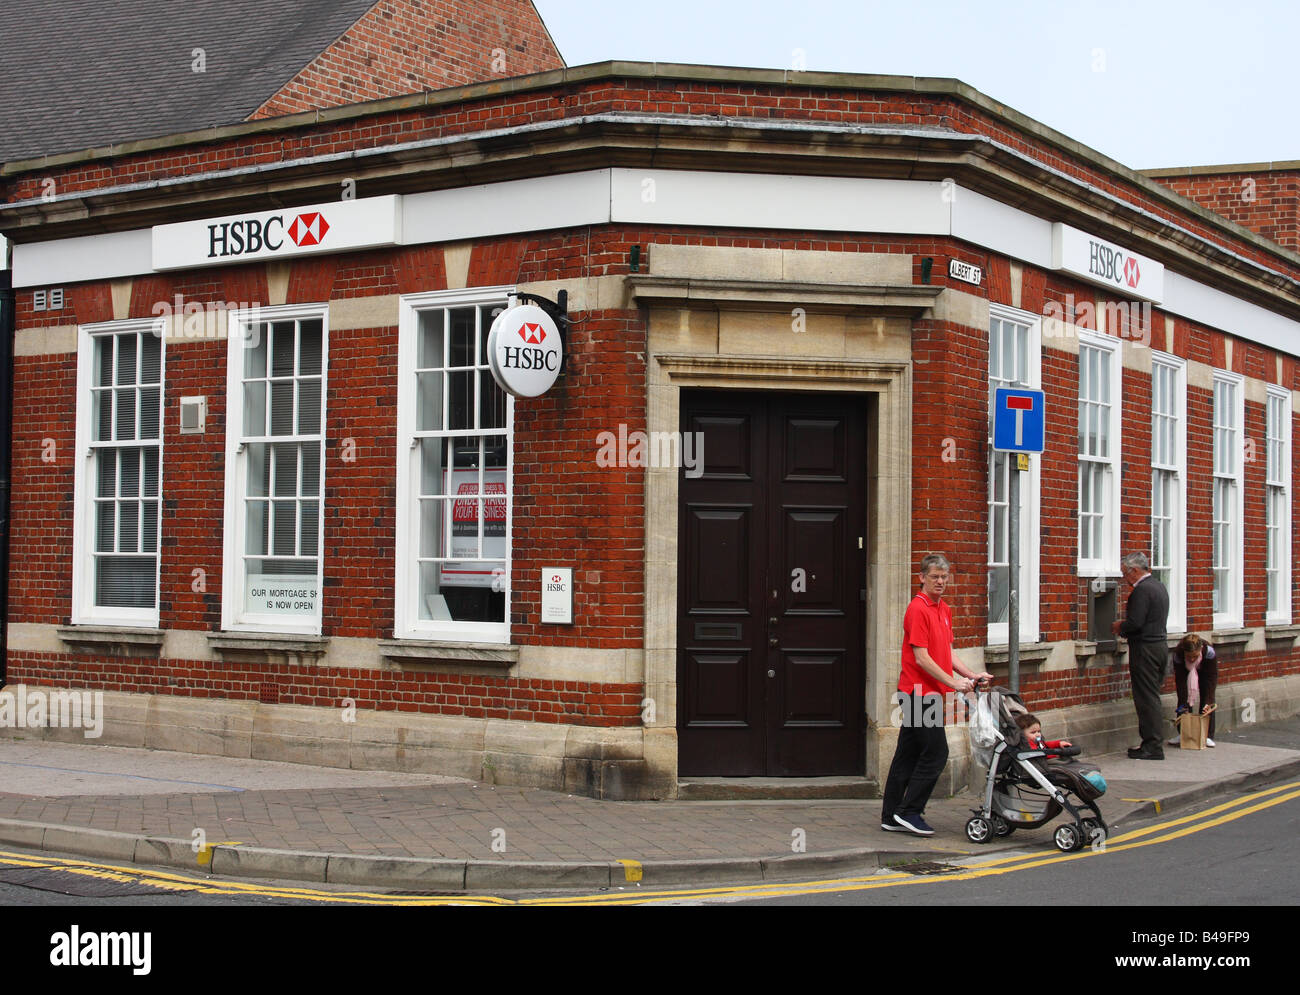 La Banque HSBC, Eastwood, Nottinghamshire, Angleterre, Royaume-Uni Banque D'Images